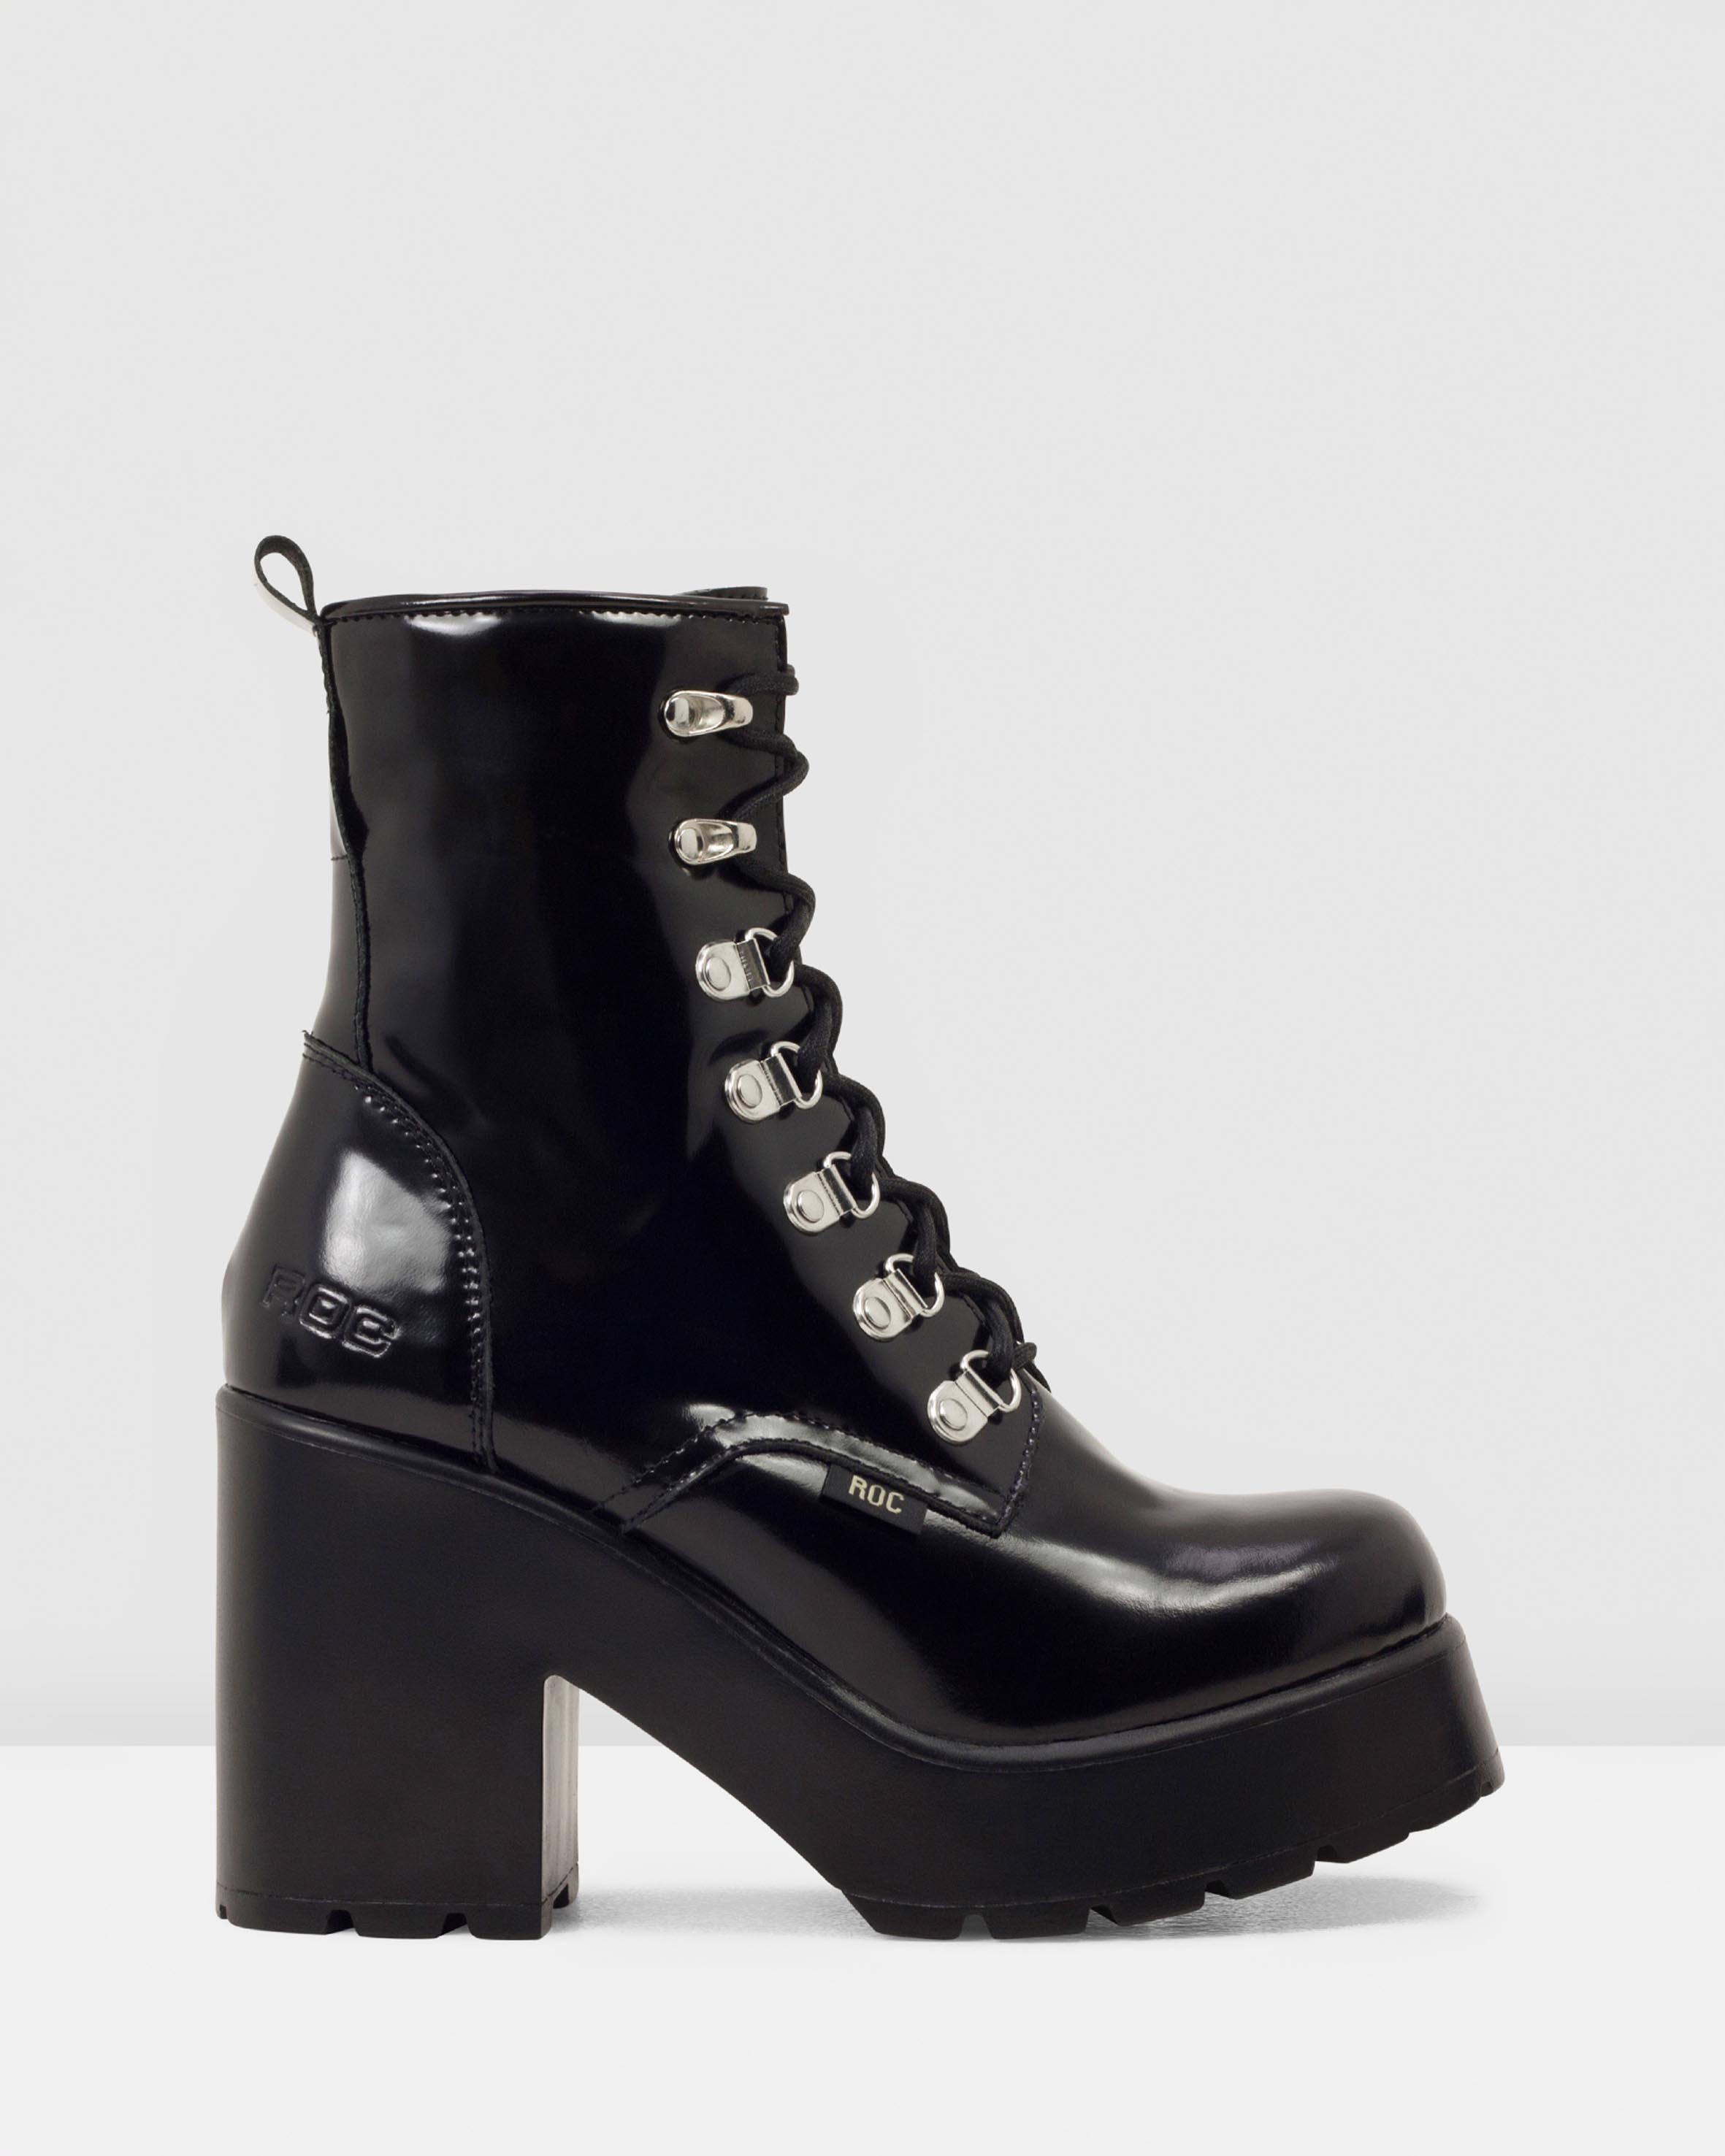 Mission Black Patent Leather by Roc Boots Australia | ShoeSales